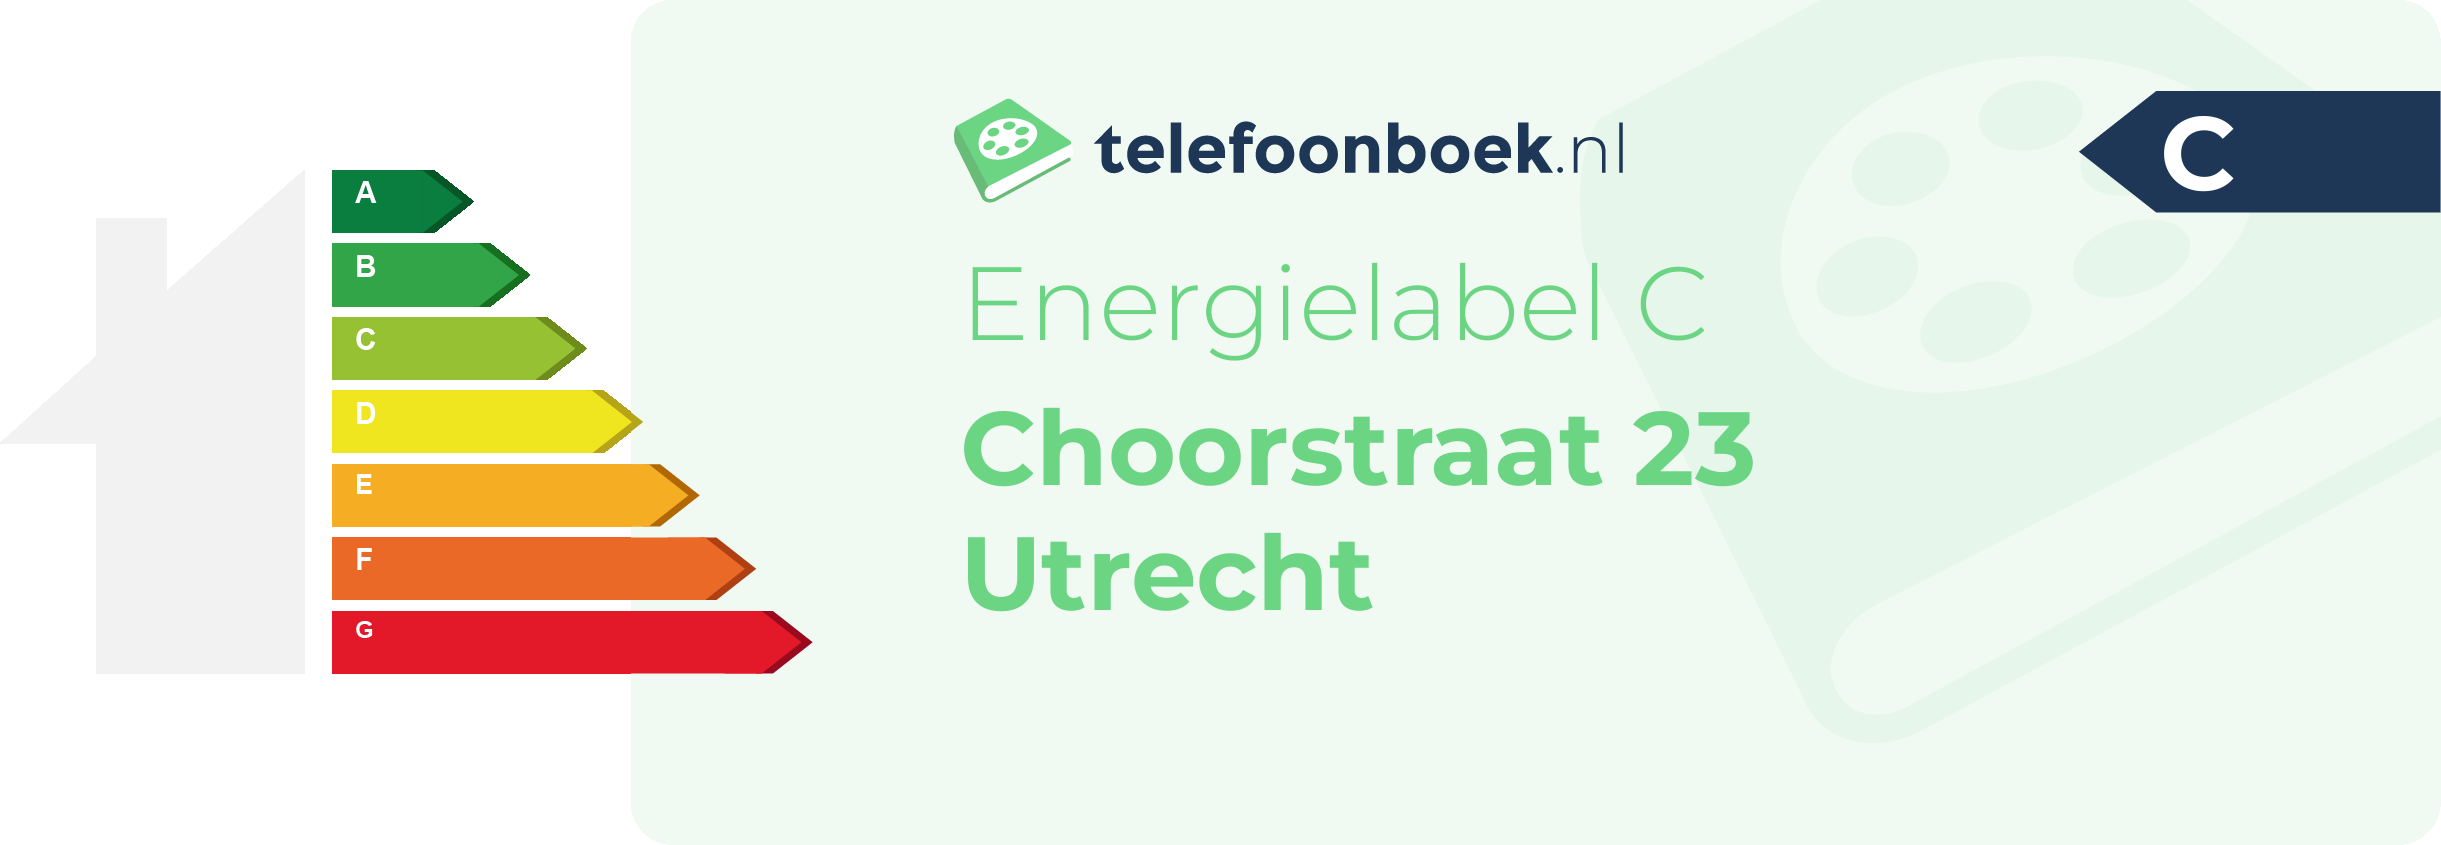 Energielabel Choorstraat 23 Utrecht